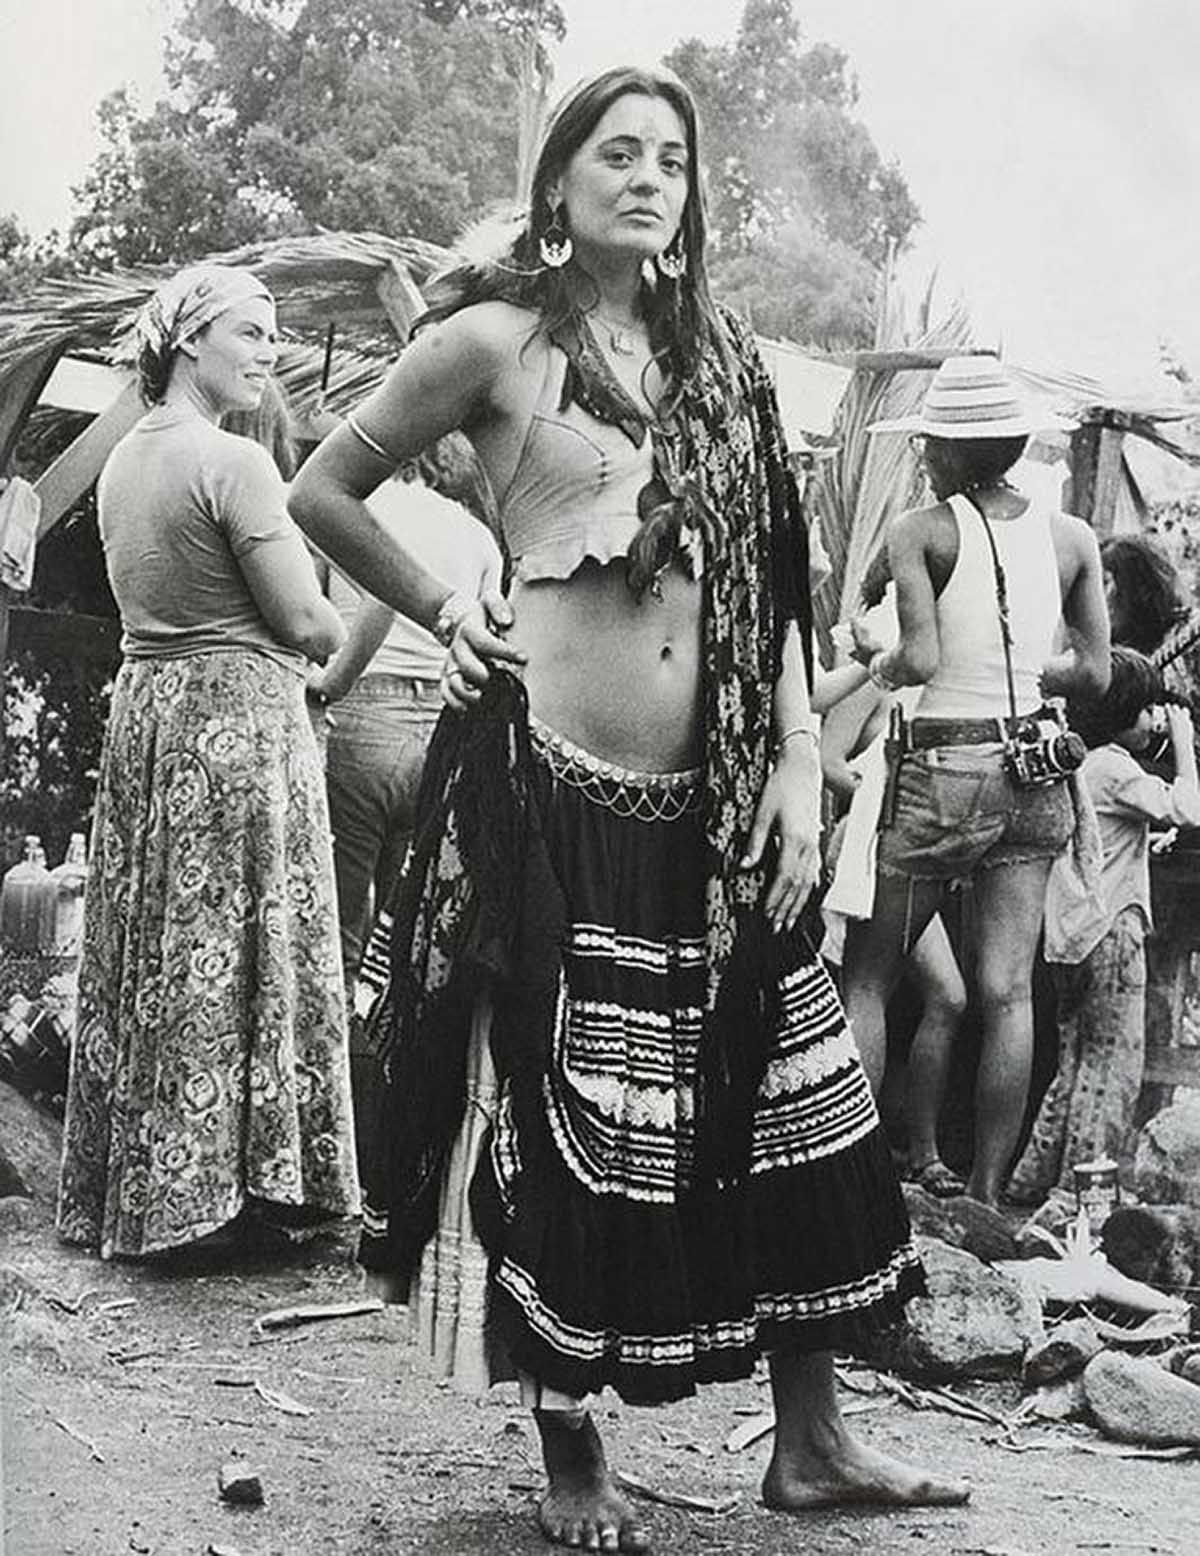 Fotos impressionantes retratam a moda rebelde de Woodstock em 1969 30